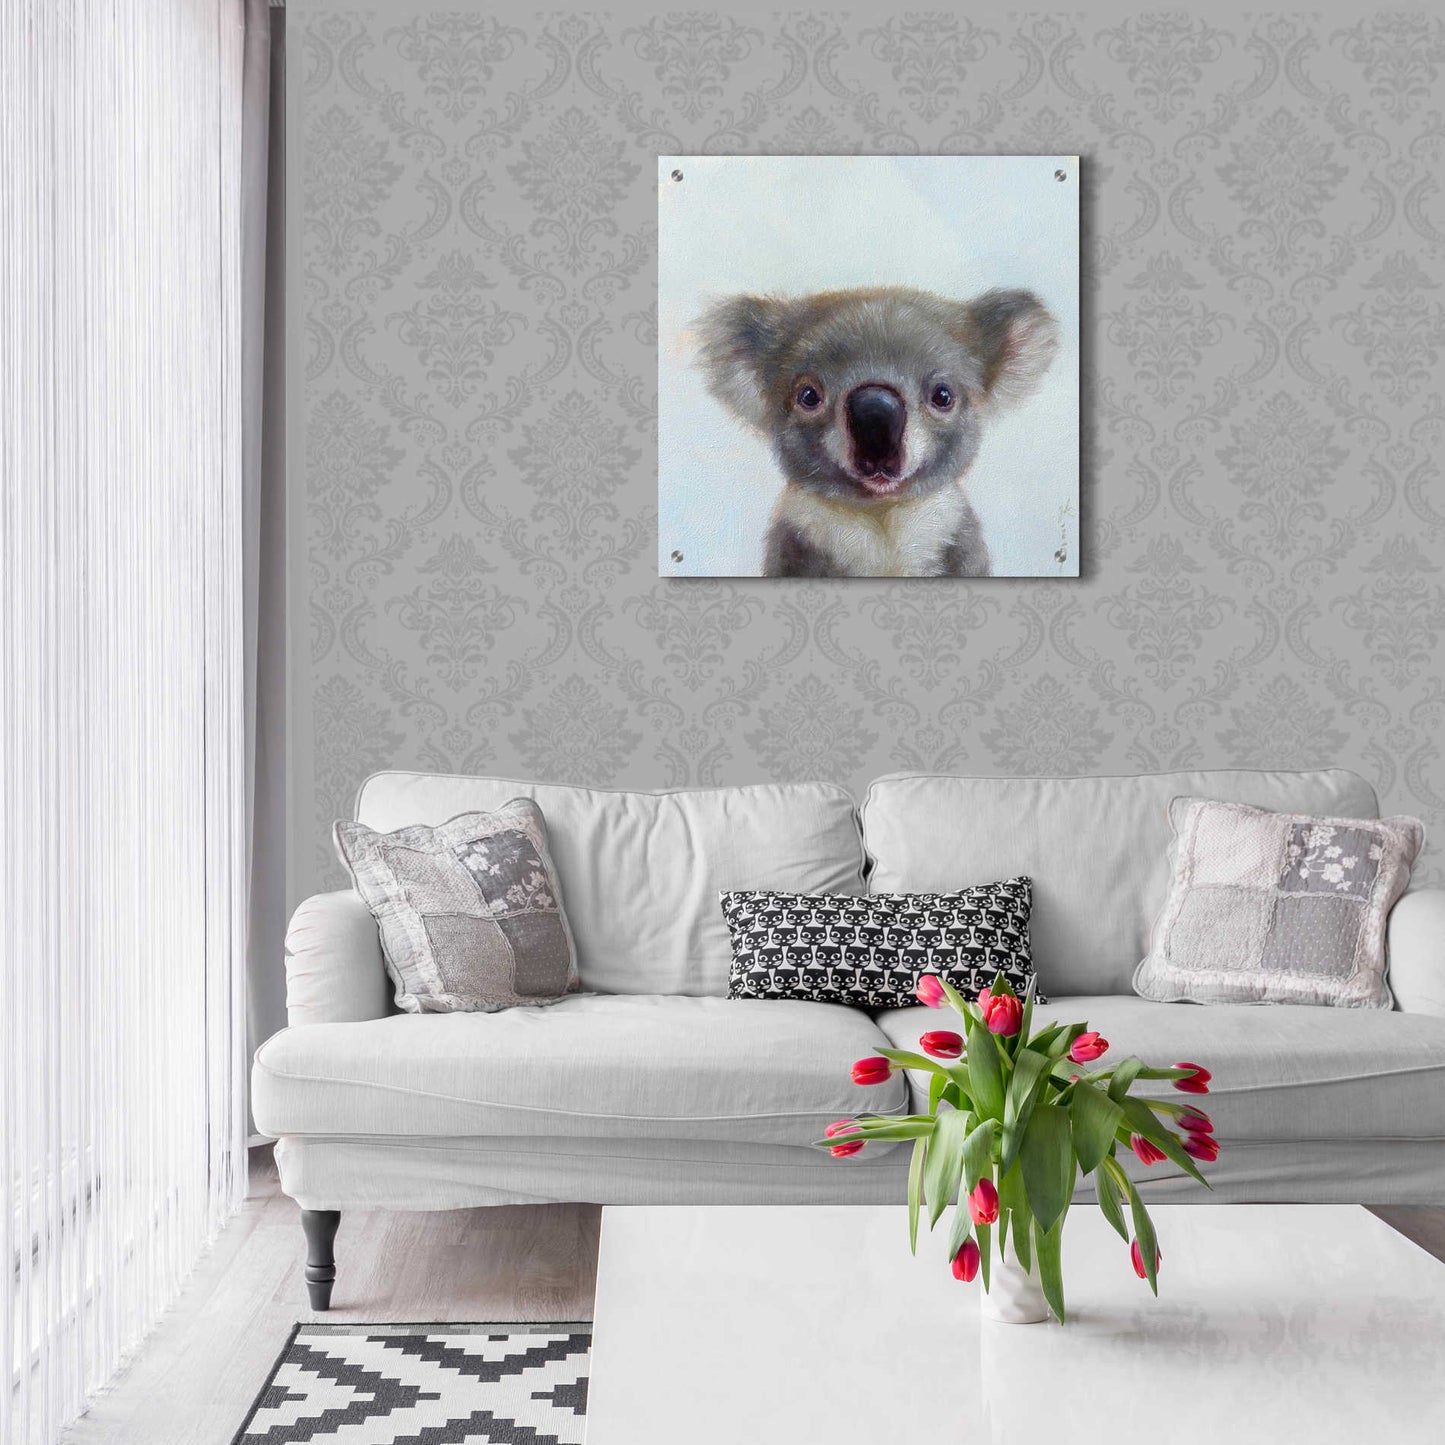 Epic Art 'Lil Koala' by Lucia Heffernan, Acrylic Glass Wall Art,24x24